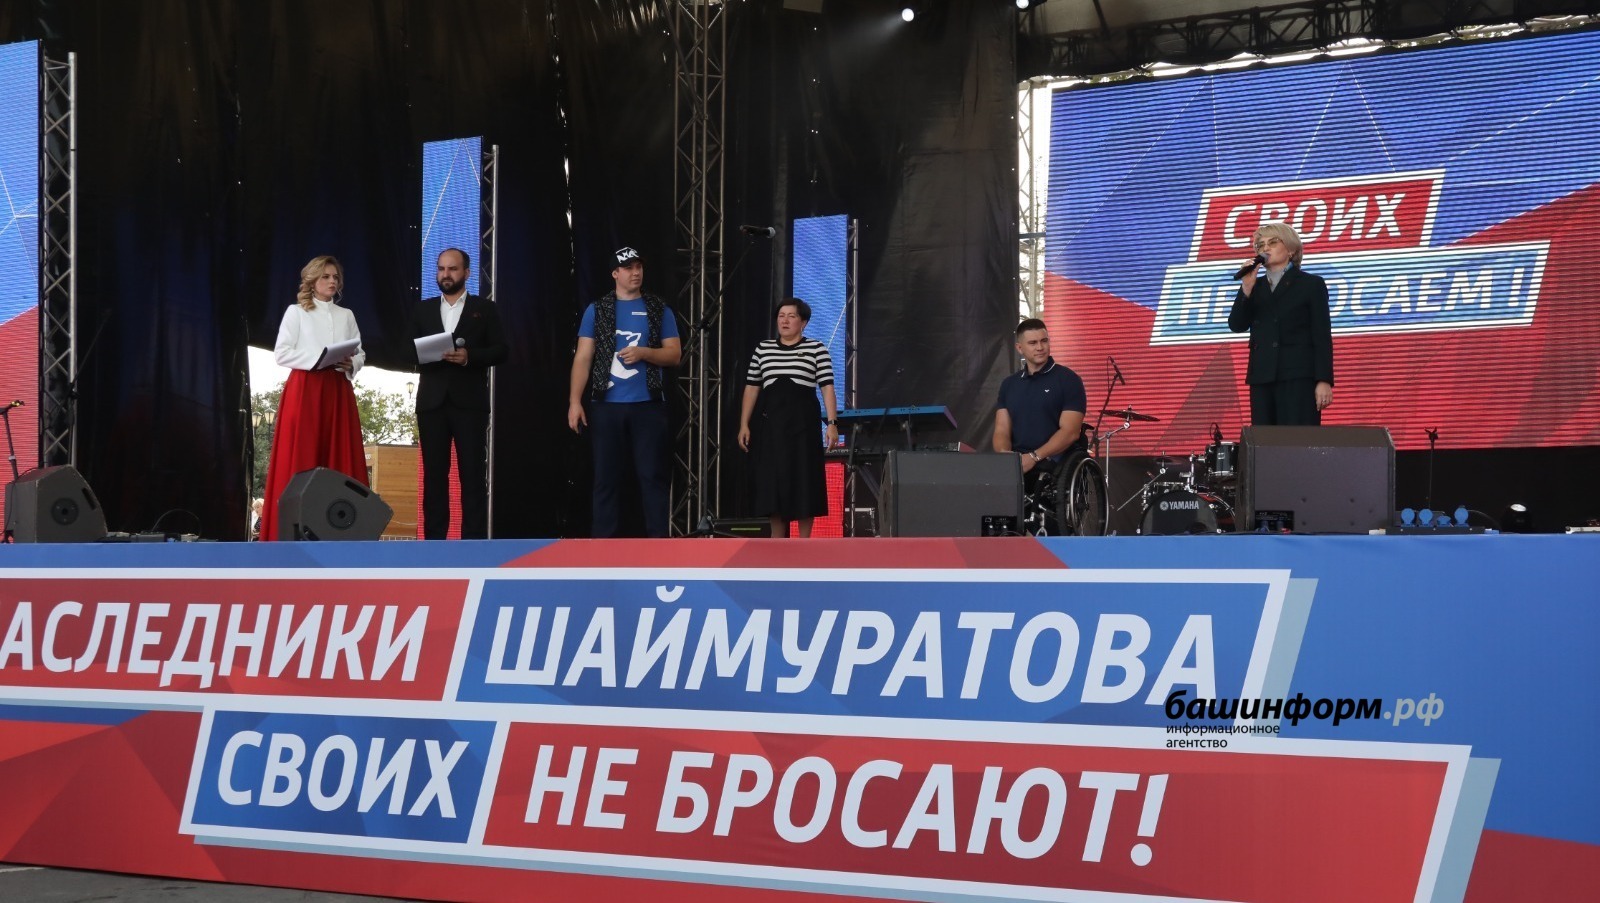 20 тысяч человек собрал в Уфе митинг-концерт «Потомки Шаймуратова своих не бросают!»